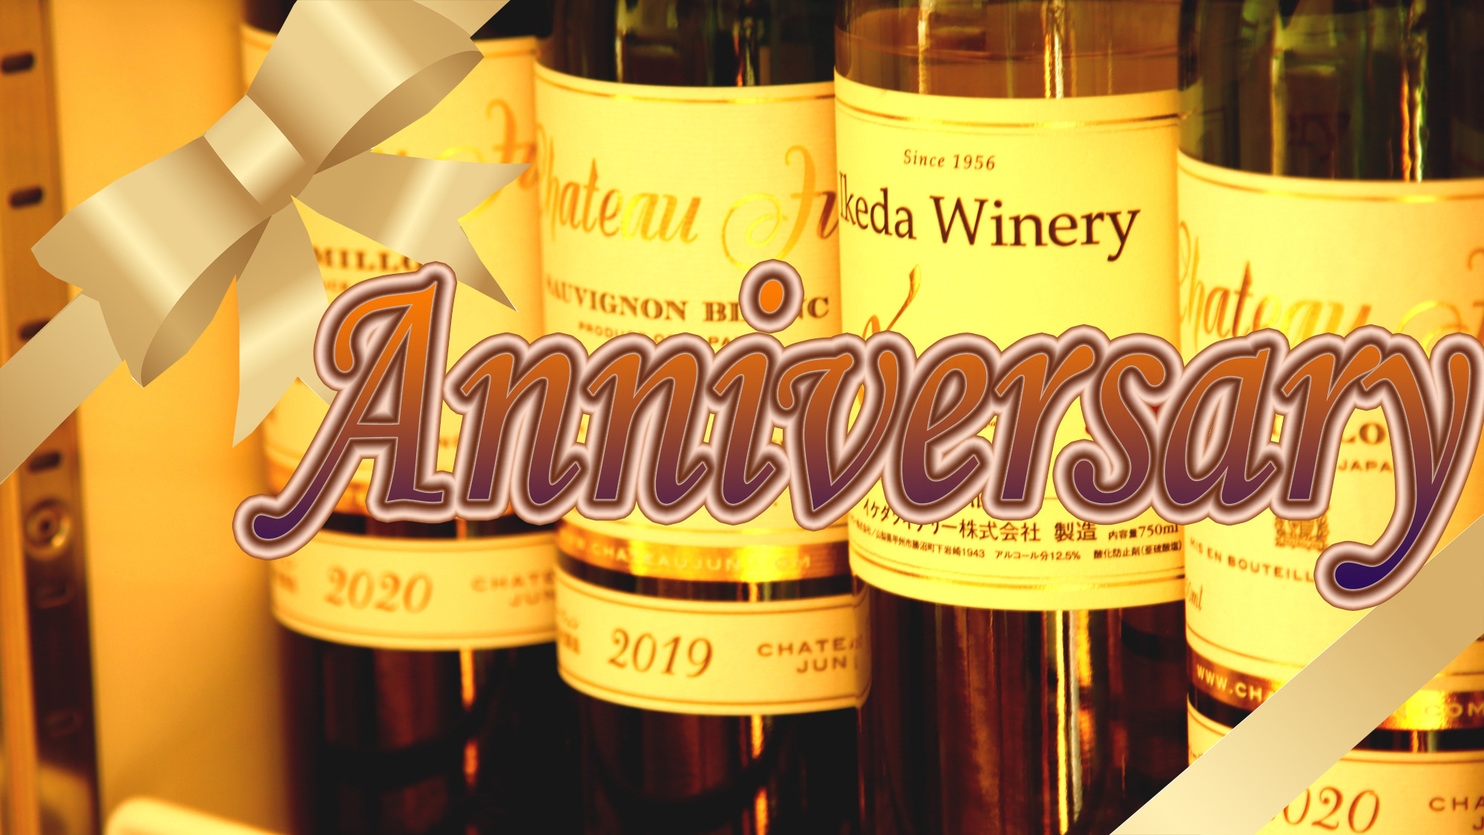 【Anniversary】大切な人と過ごす記念日に◆ボトルワイン＆デザート付♪